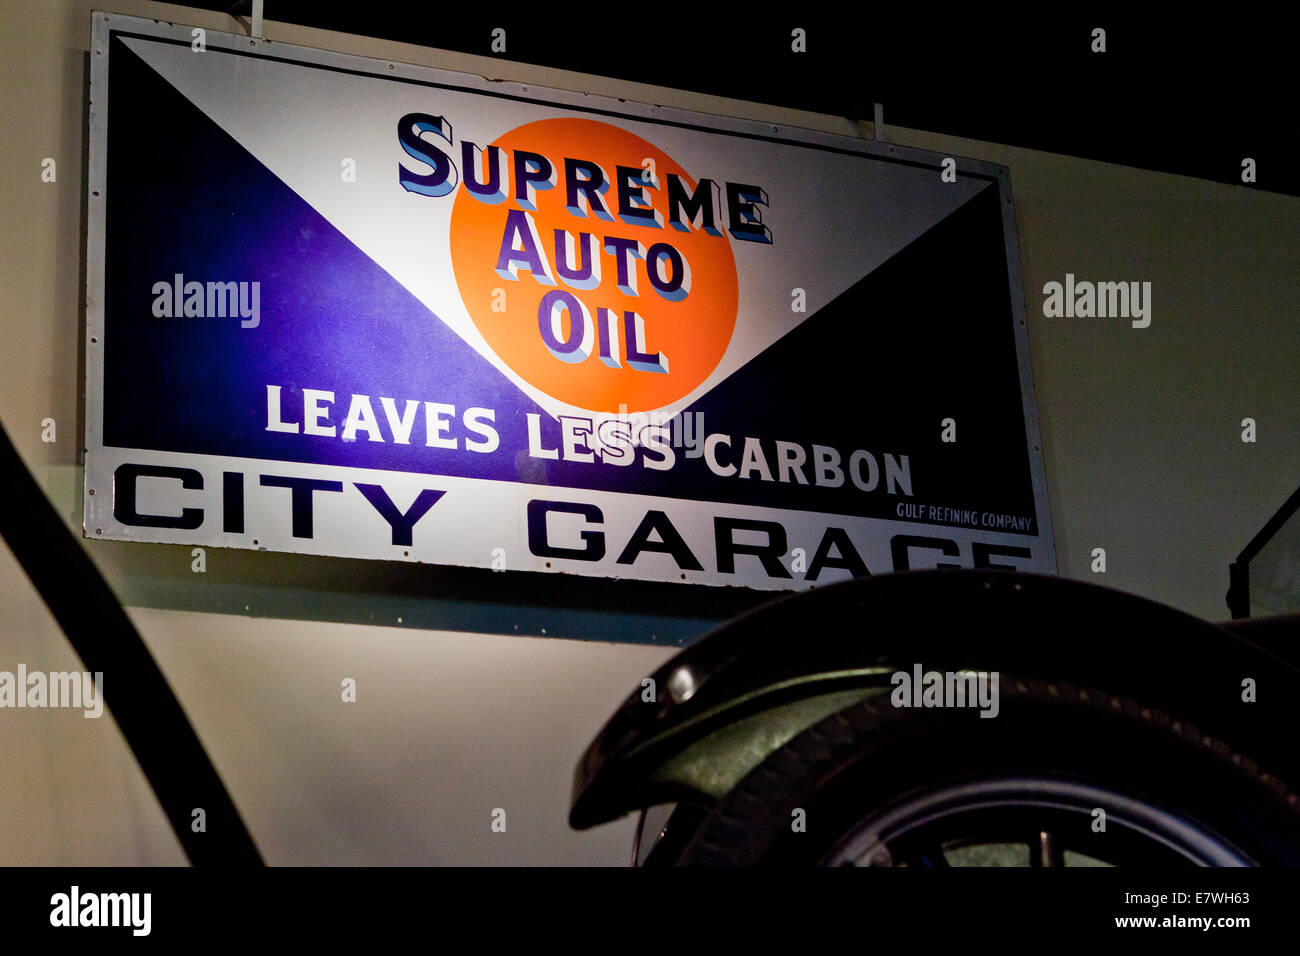 Cour suprême de l'huile Auto Vintage / City Garage tin sign, vers 1930 - L'Amérique du nord de l'Amérique US USA Amérique du nord-américains Banque D'Images